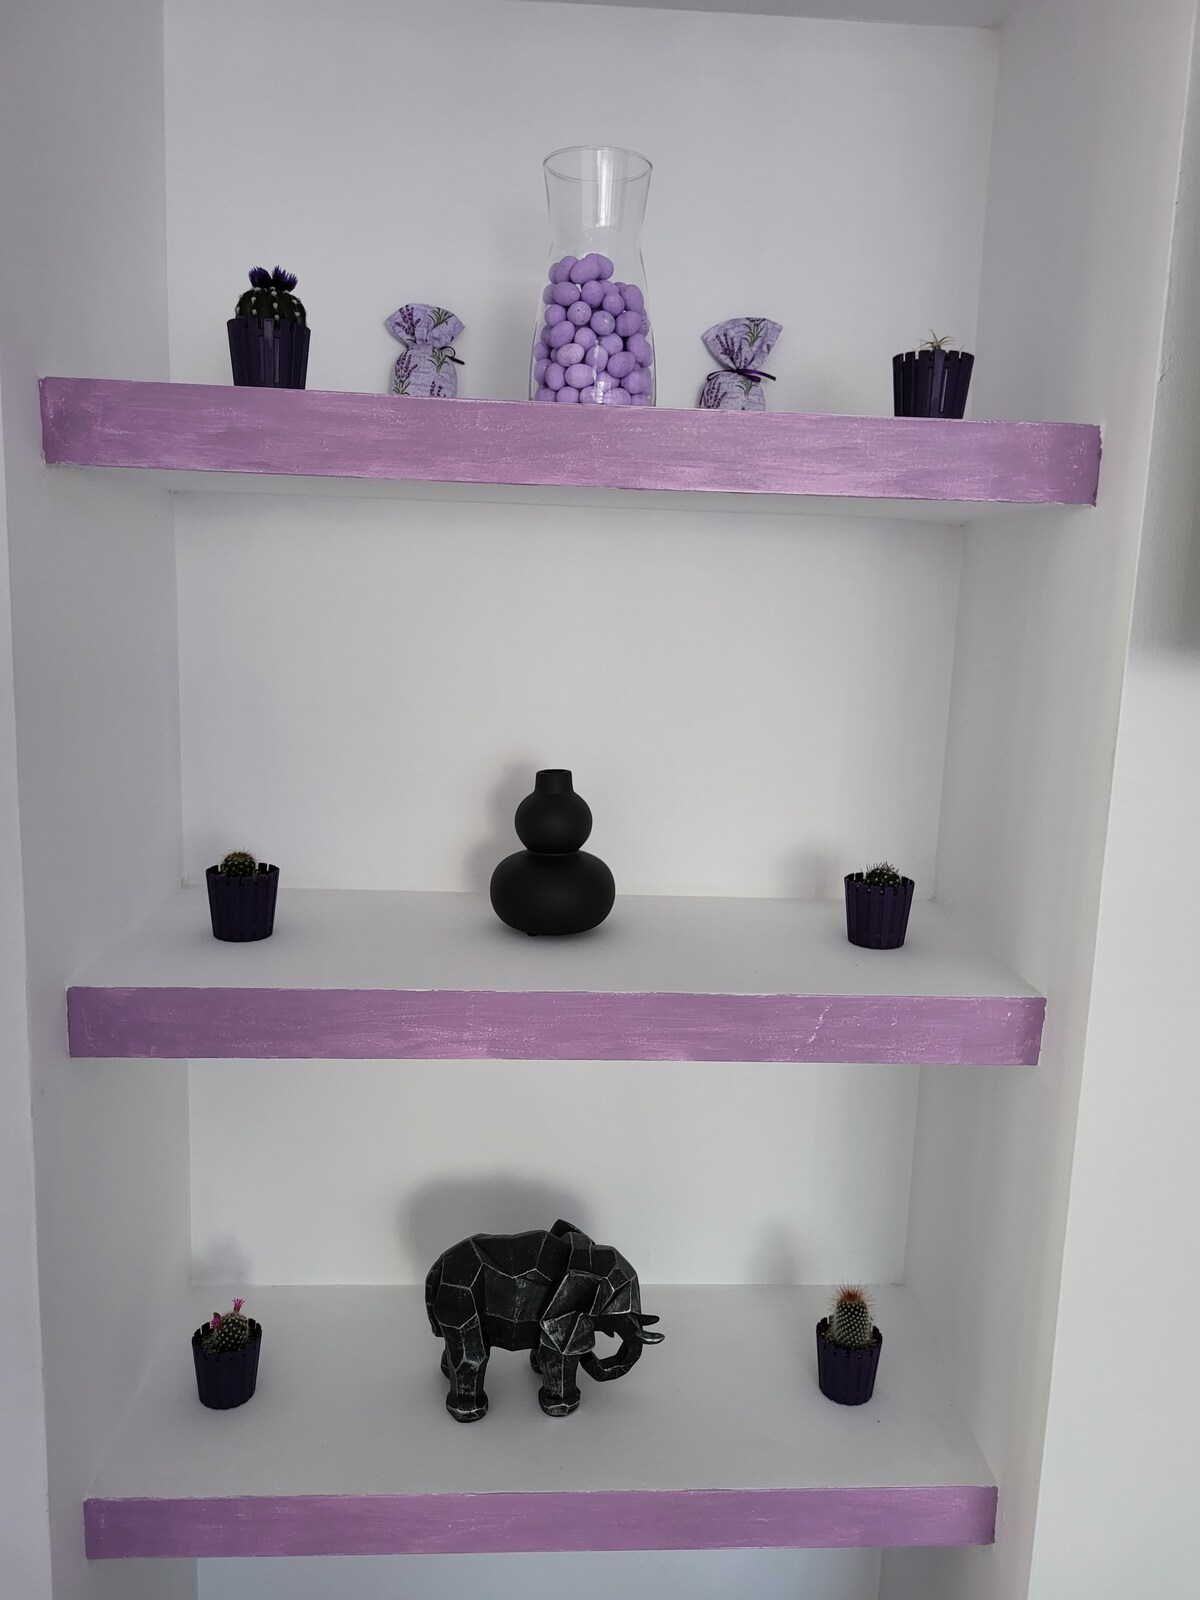 紫黑色单间公寓